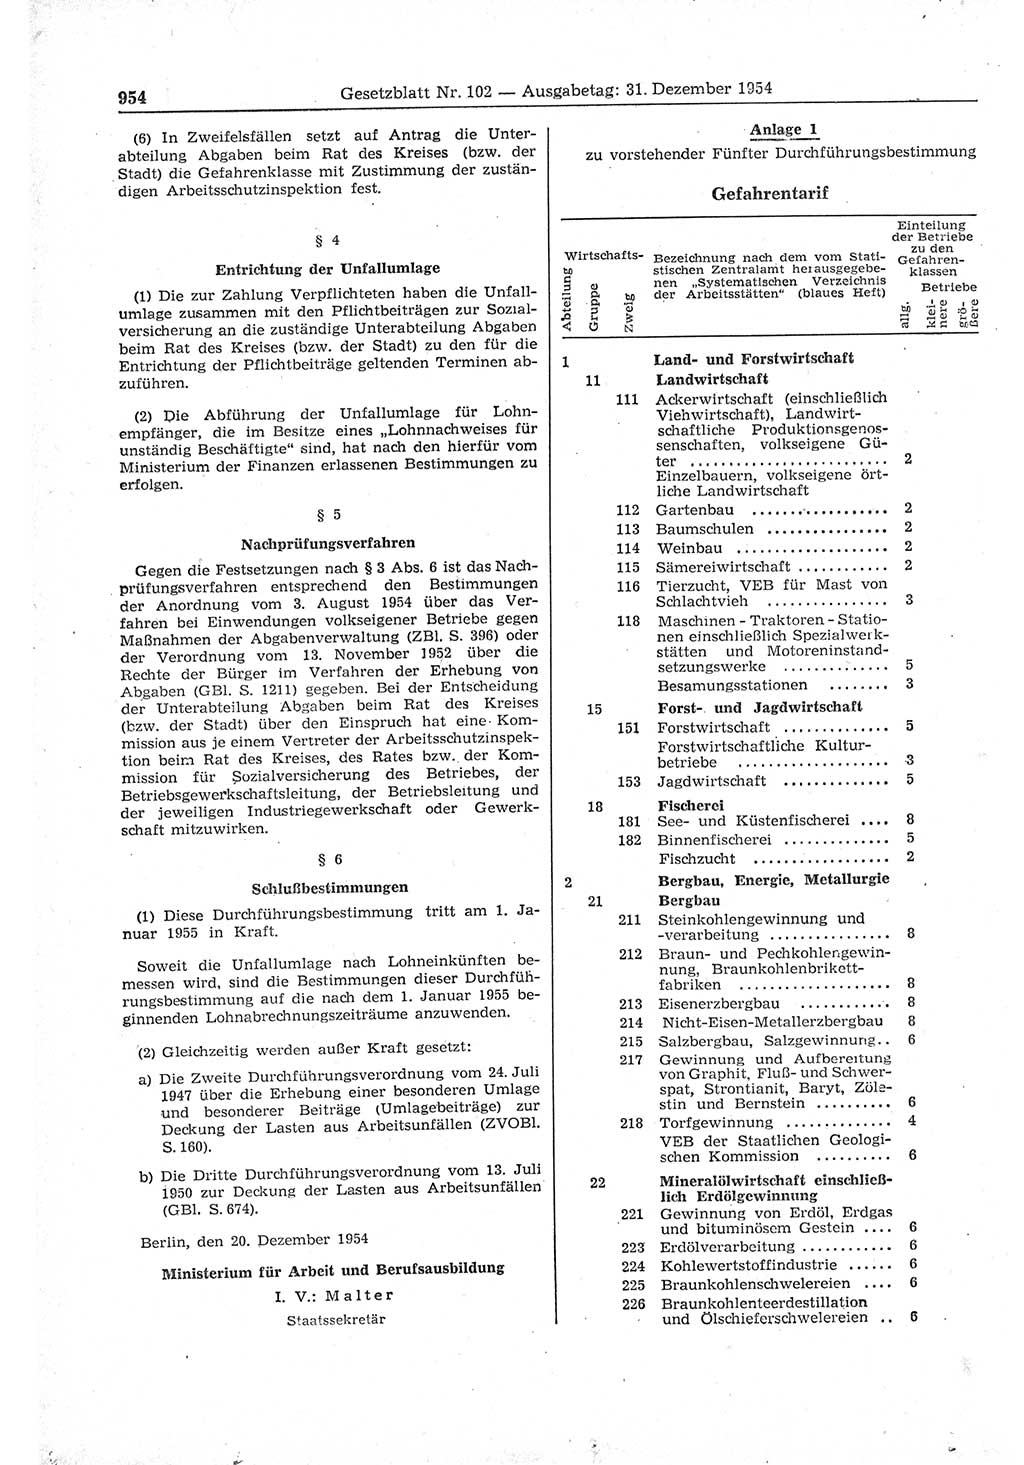 Gesetzblatt (GBl.) der Deutschen Demokratischen Republik (DDR) 1954, Seite 954 (GBl. DDR 1954, S. 954)